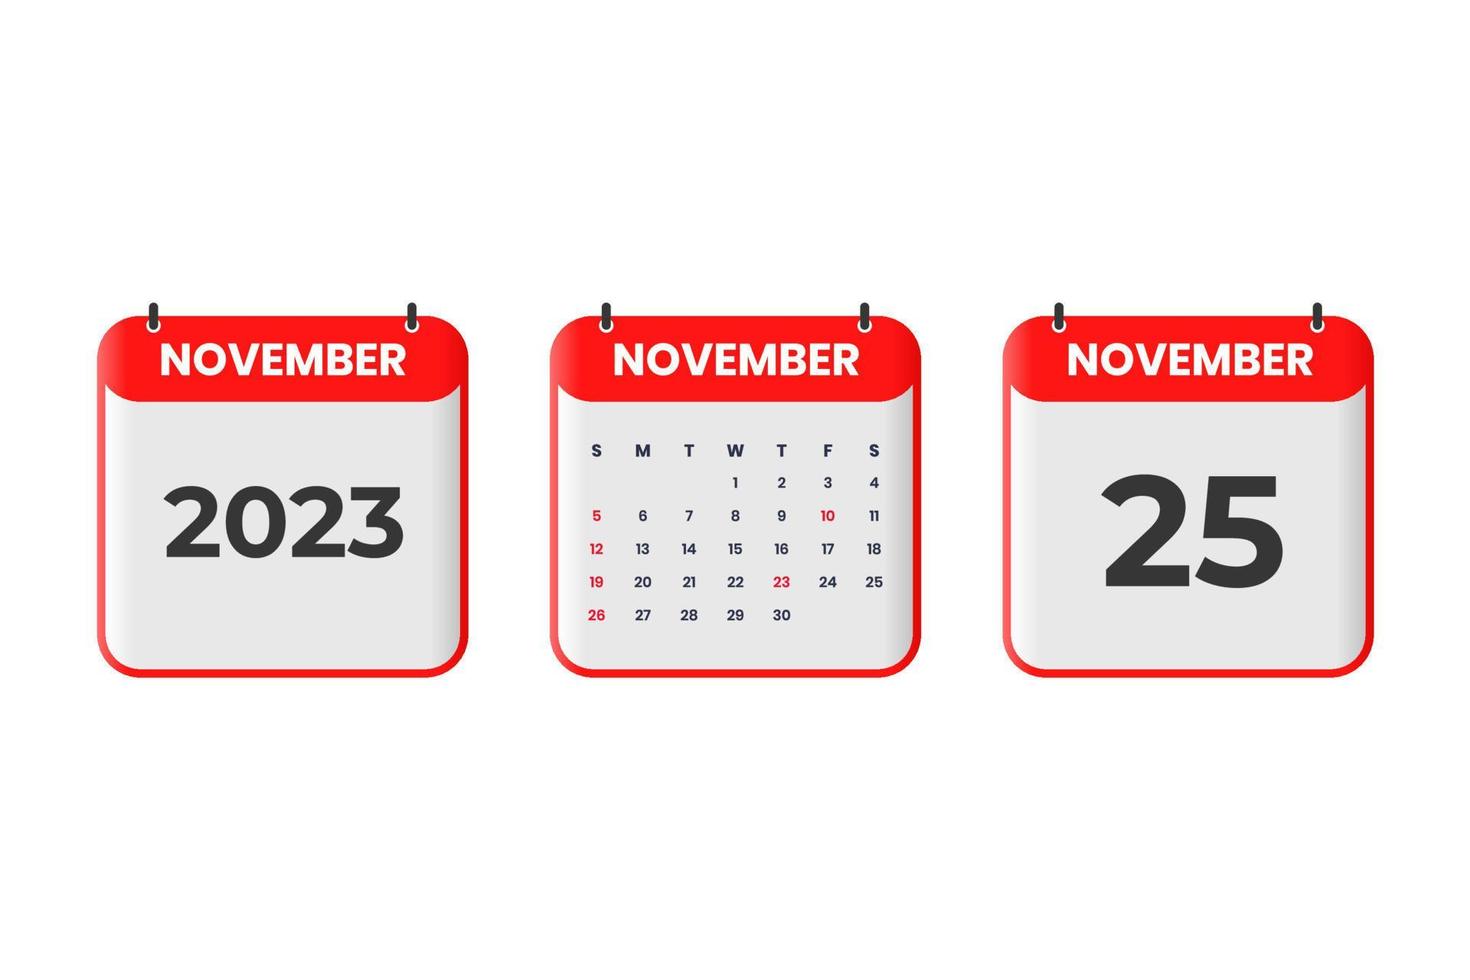 november 2023 kalender design. 25:e november 2023 kalender ikon för schema, utnämning, Viktig datum begrepp vektor